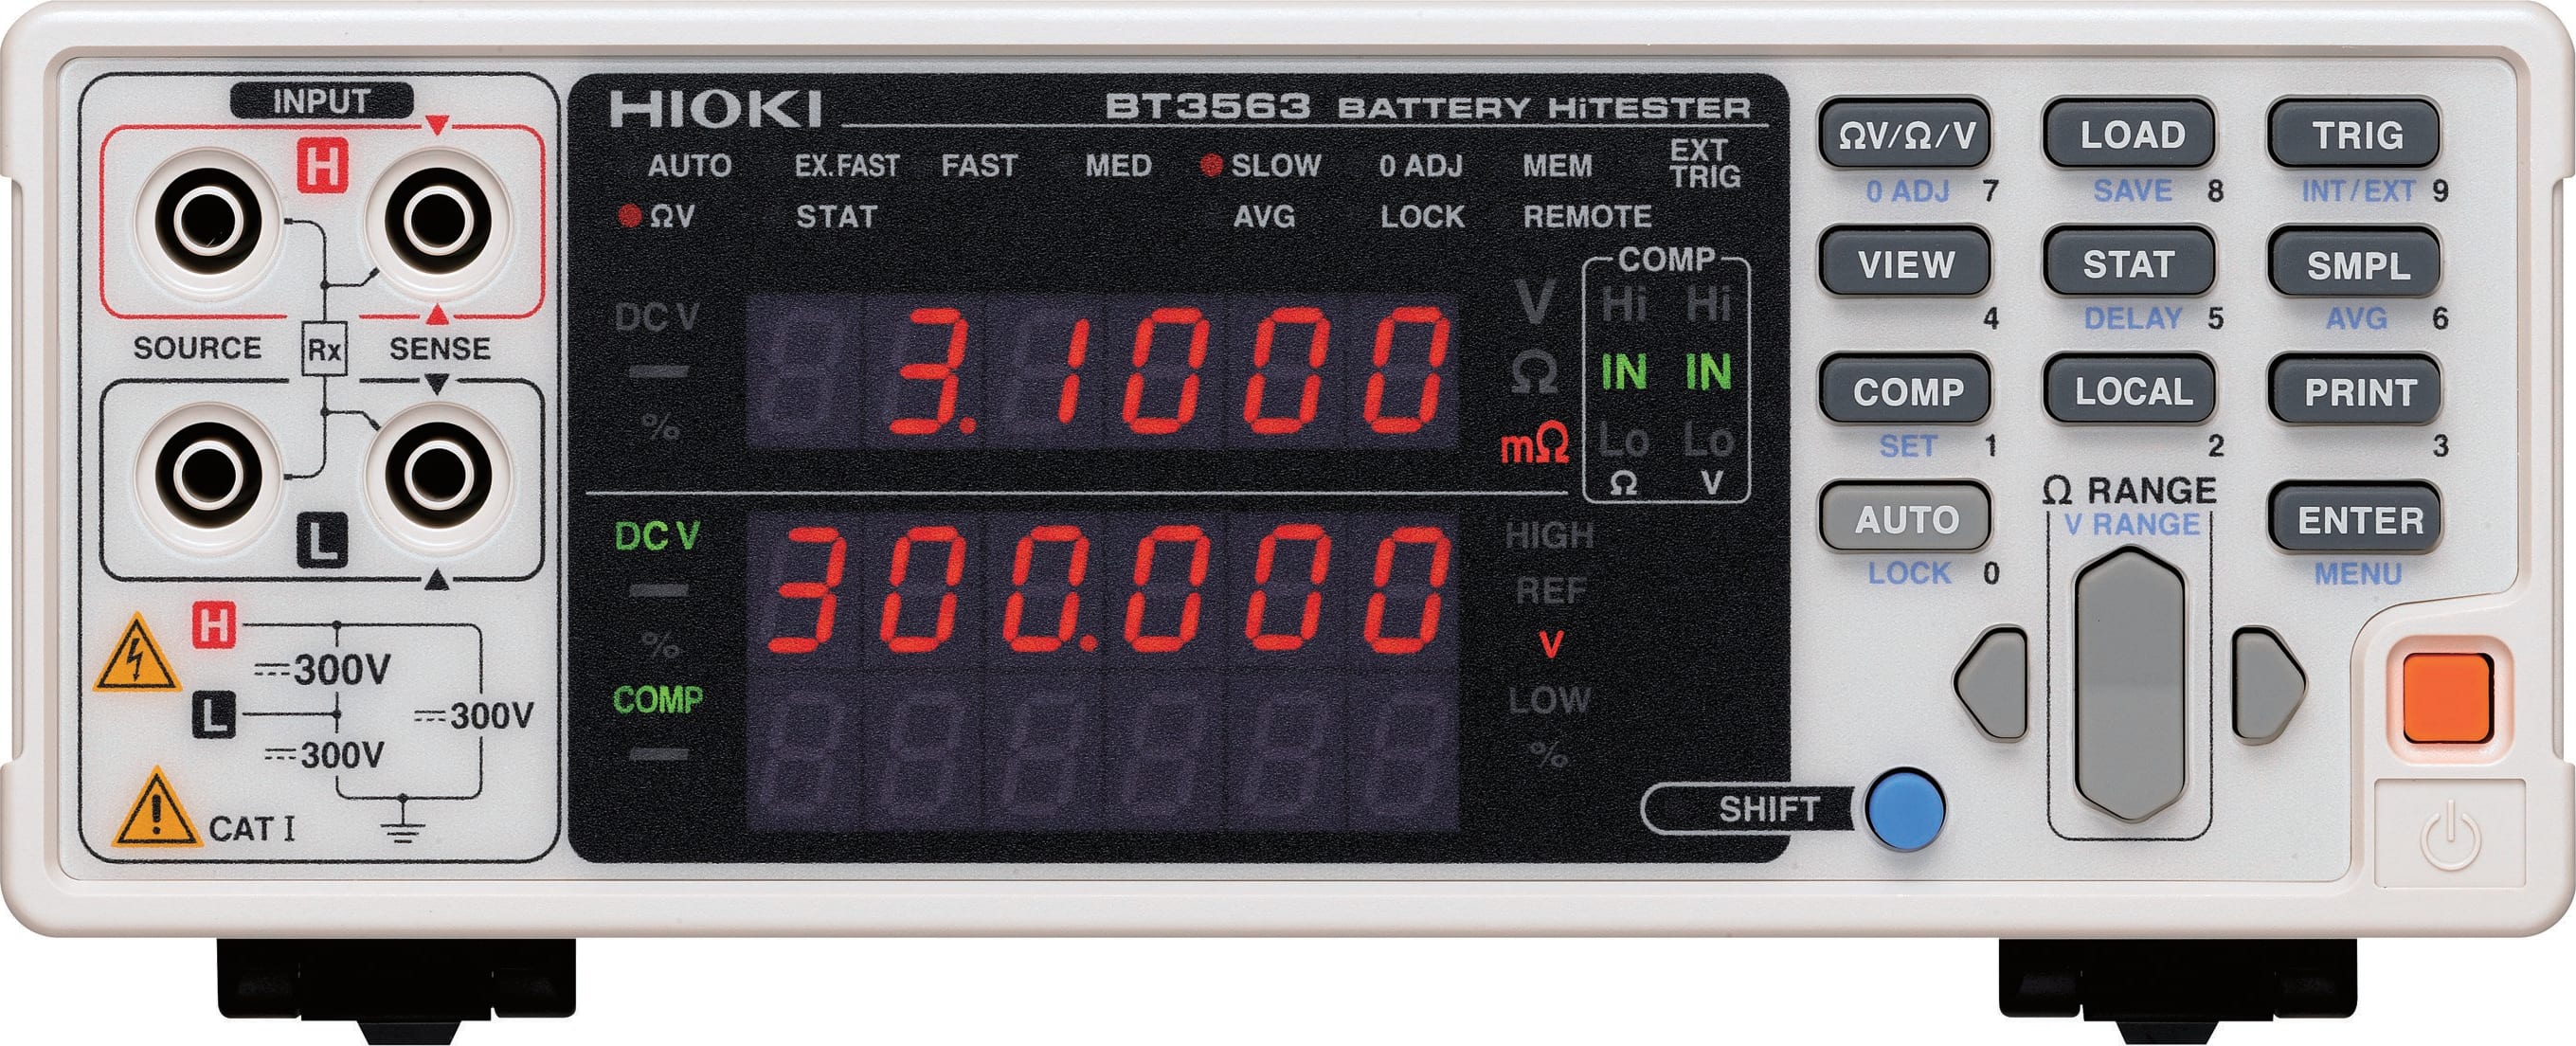 Hioki BT3563 Battery HiTester with GP-IB and Analog Output